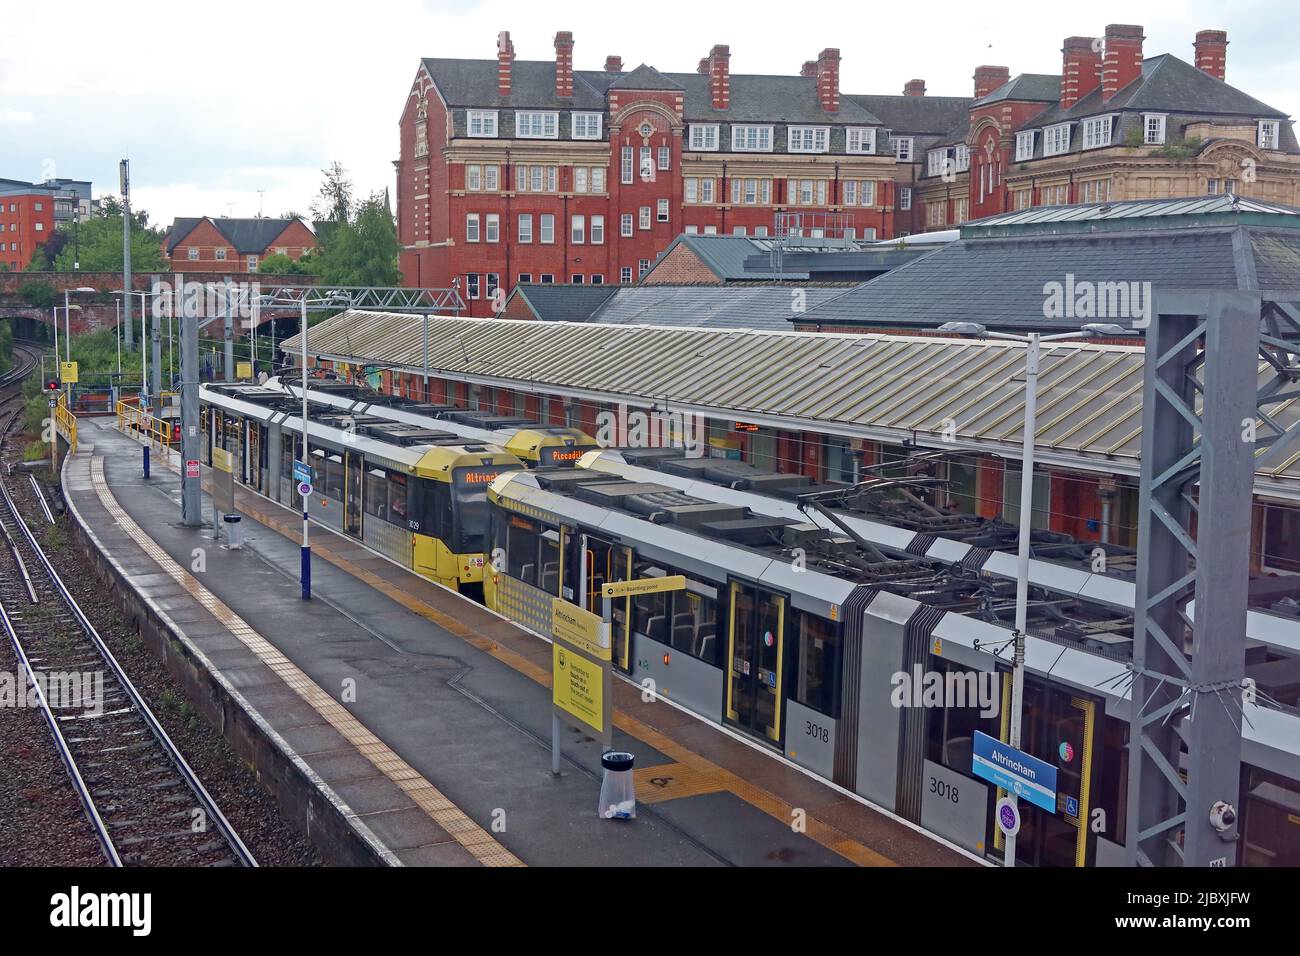 Deux trams Metrolink à l'échangeur / gare de transport en commun d'Altrincham, Stamford New Road, Greater Manchester, Angleterre, Royaume-Uni, WA14 1BL Banque D'Images